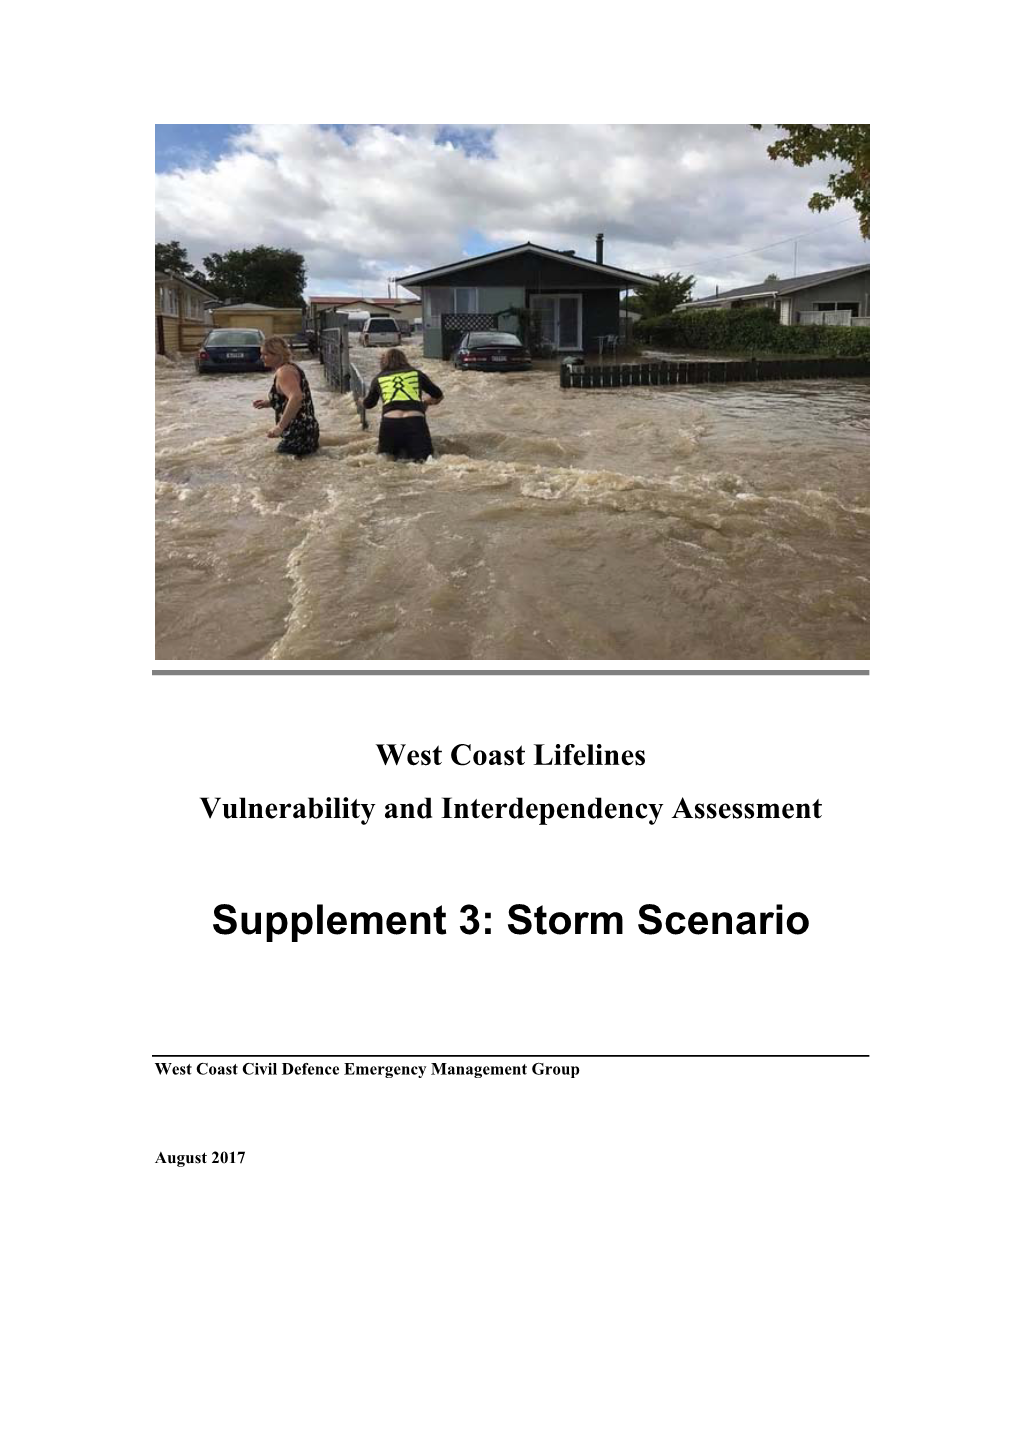 Supplement 3: Storm Scenario